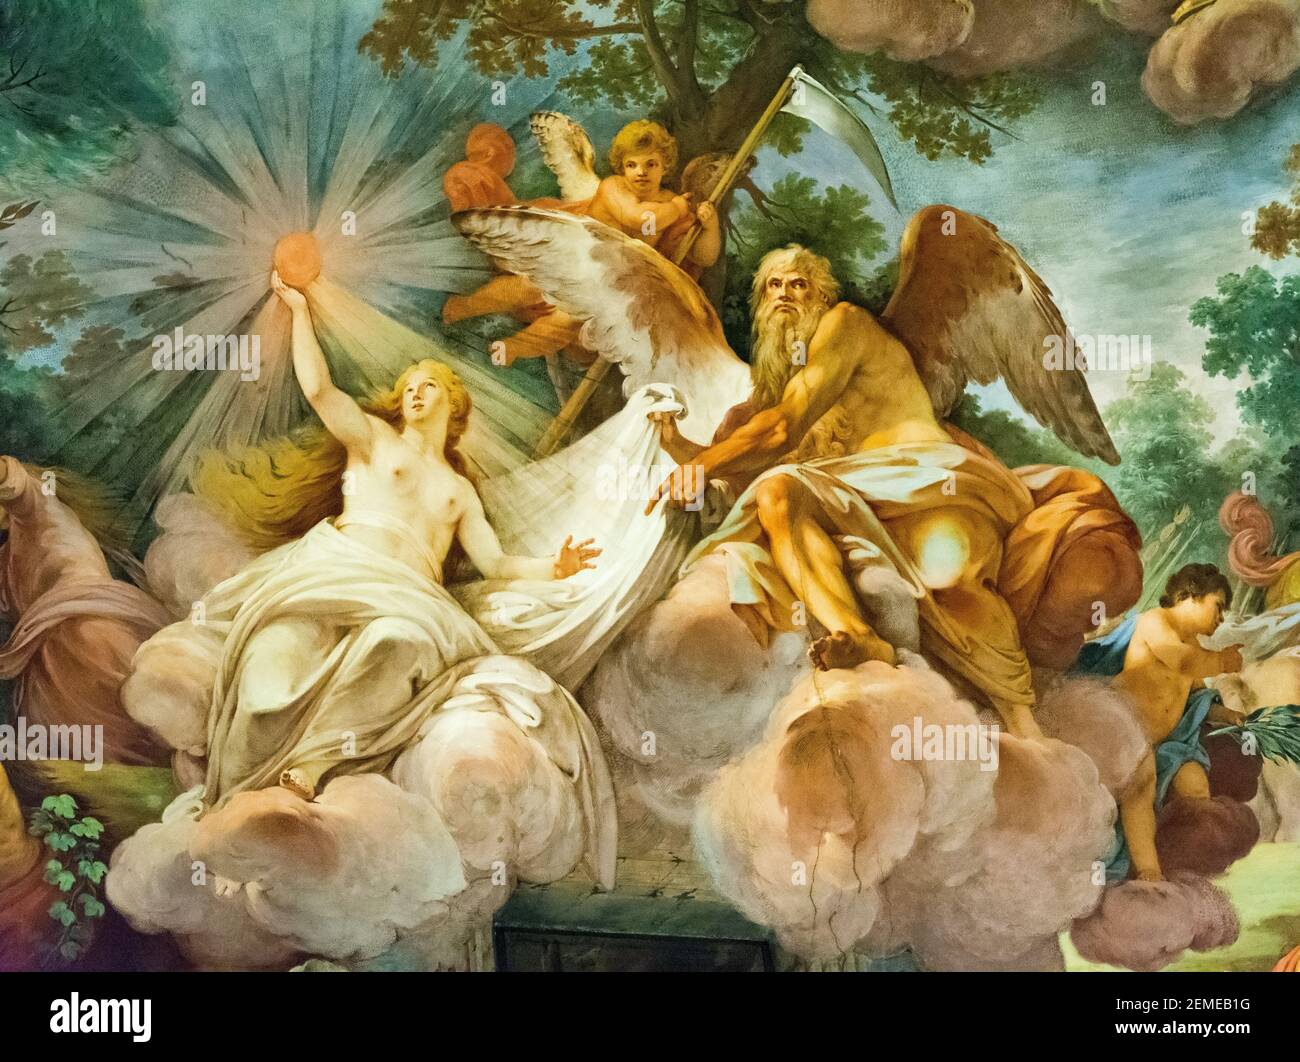 Rome, Italie - 05 octobre 2018 : peinture sur le plafond de la galerie Borghèse, Rome Banque D'Images